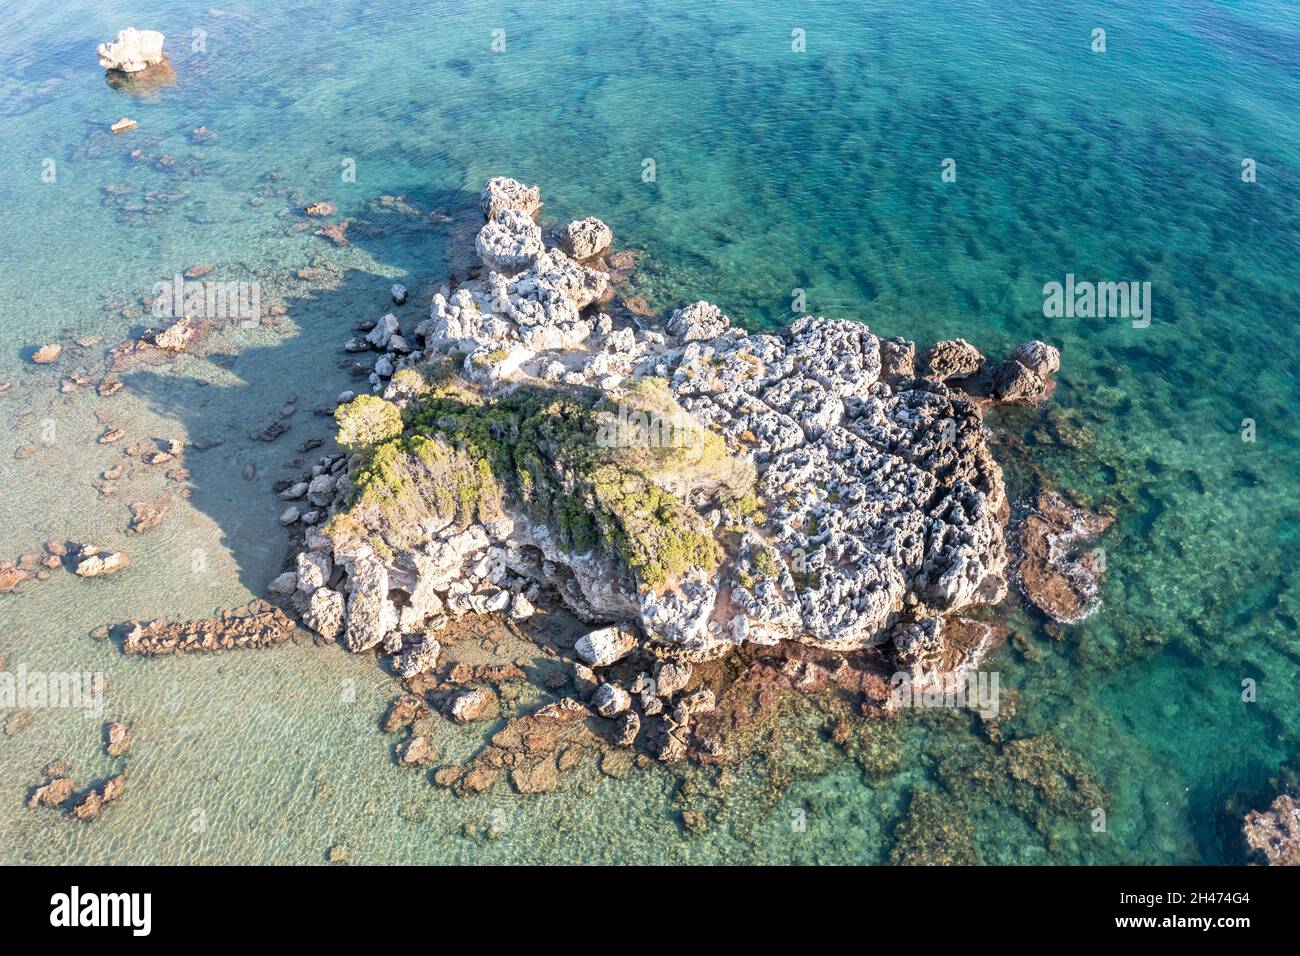 Einsam großer grober Felsen in salzig klarem, transparentem türkisblauem Ägäis-Meer. Luftdrohnenaufnahme der griechischen wilden Felsformation in graubrauner Farbe w Stockfoto